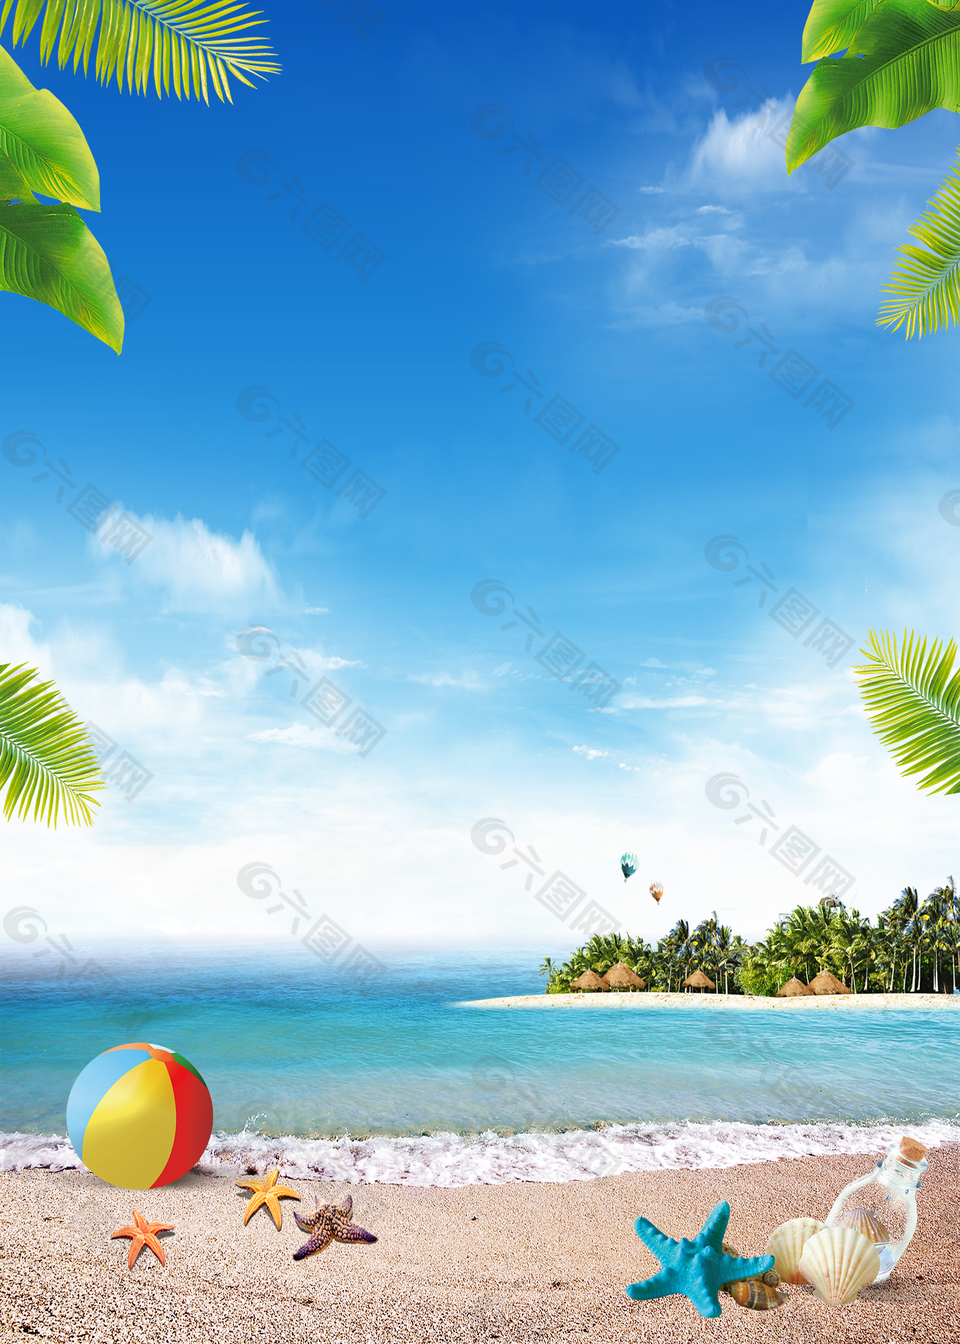 蓝天白云风景海滩沙滩夏日背景素材背景素材免费下载 图片编号 六图网